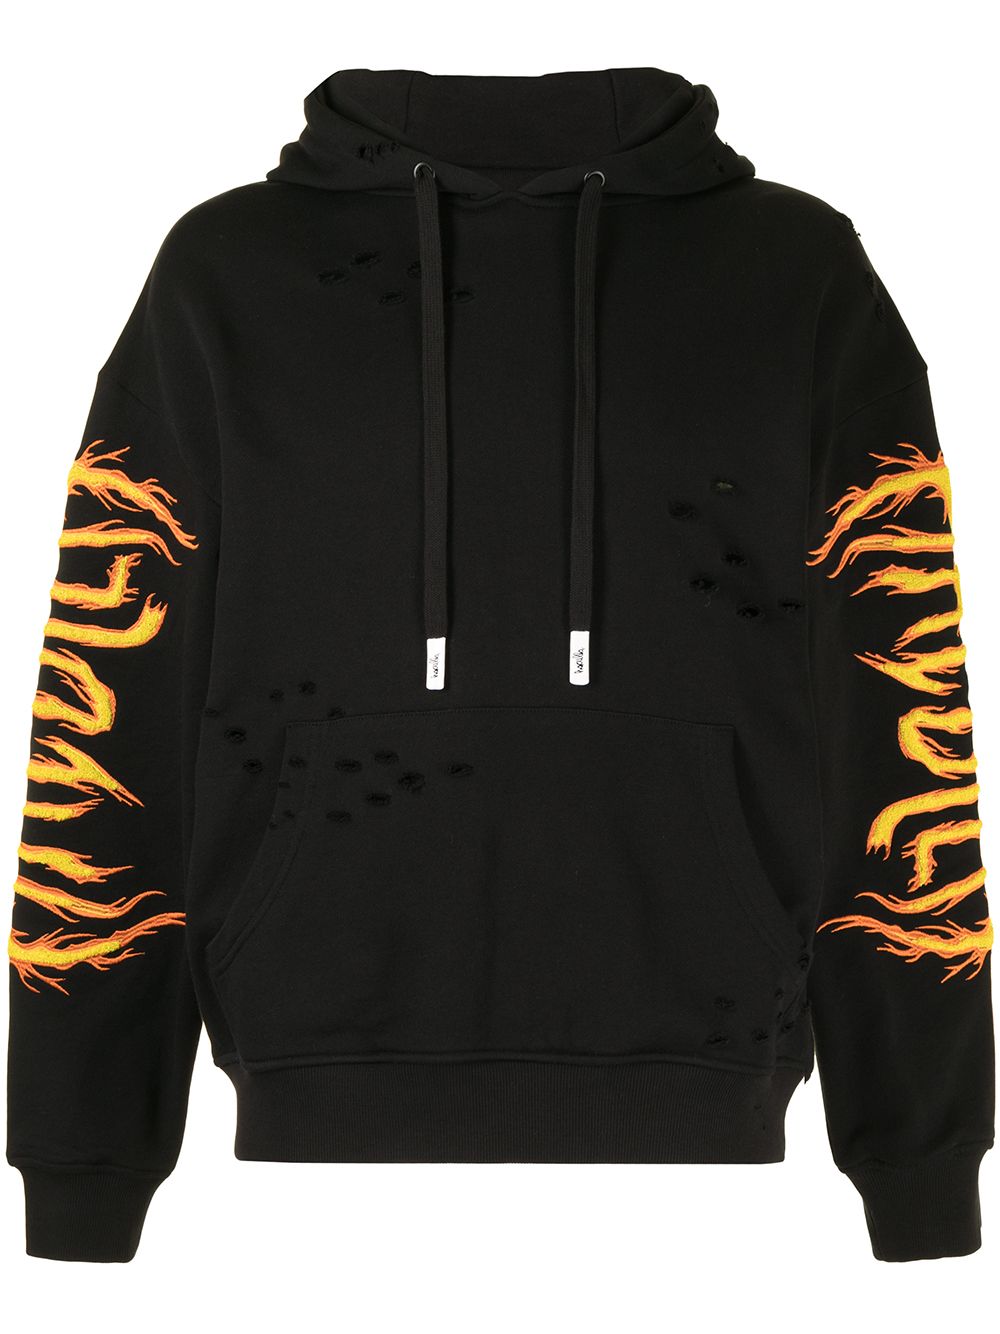 Hac On Fire hoodie